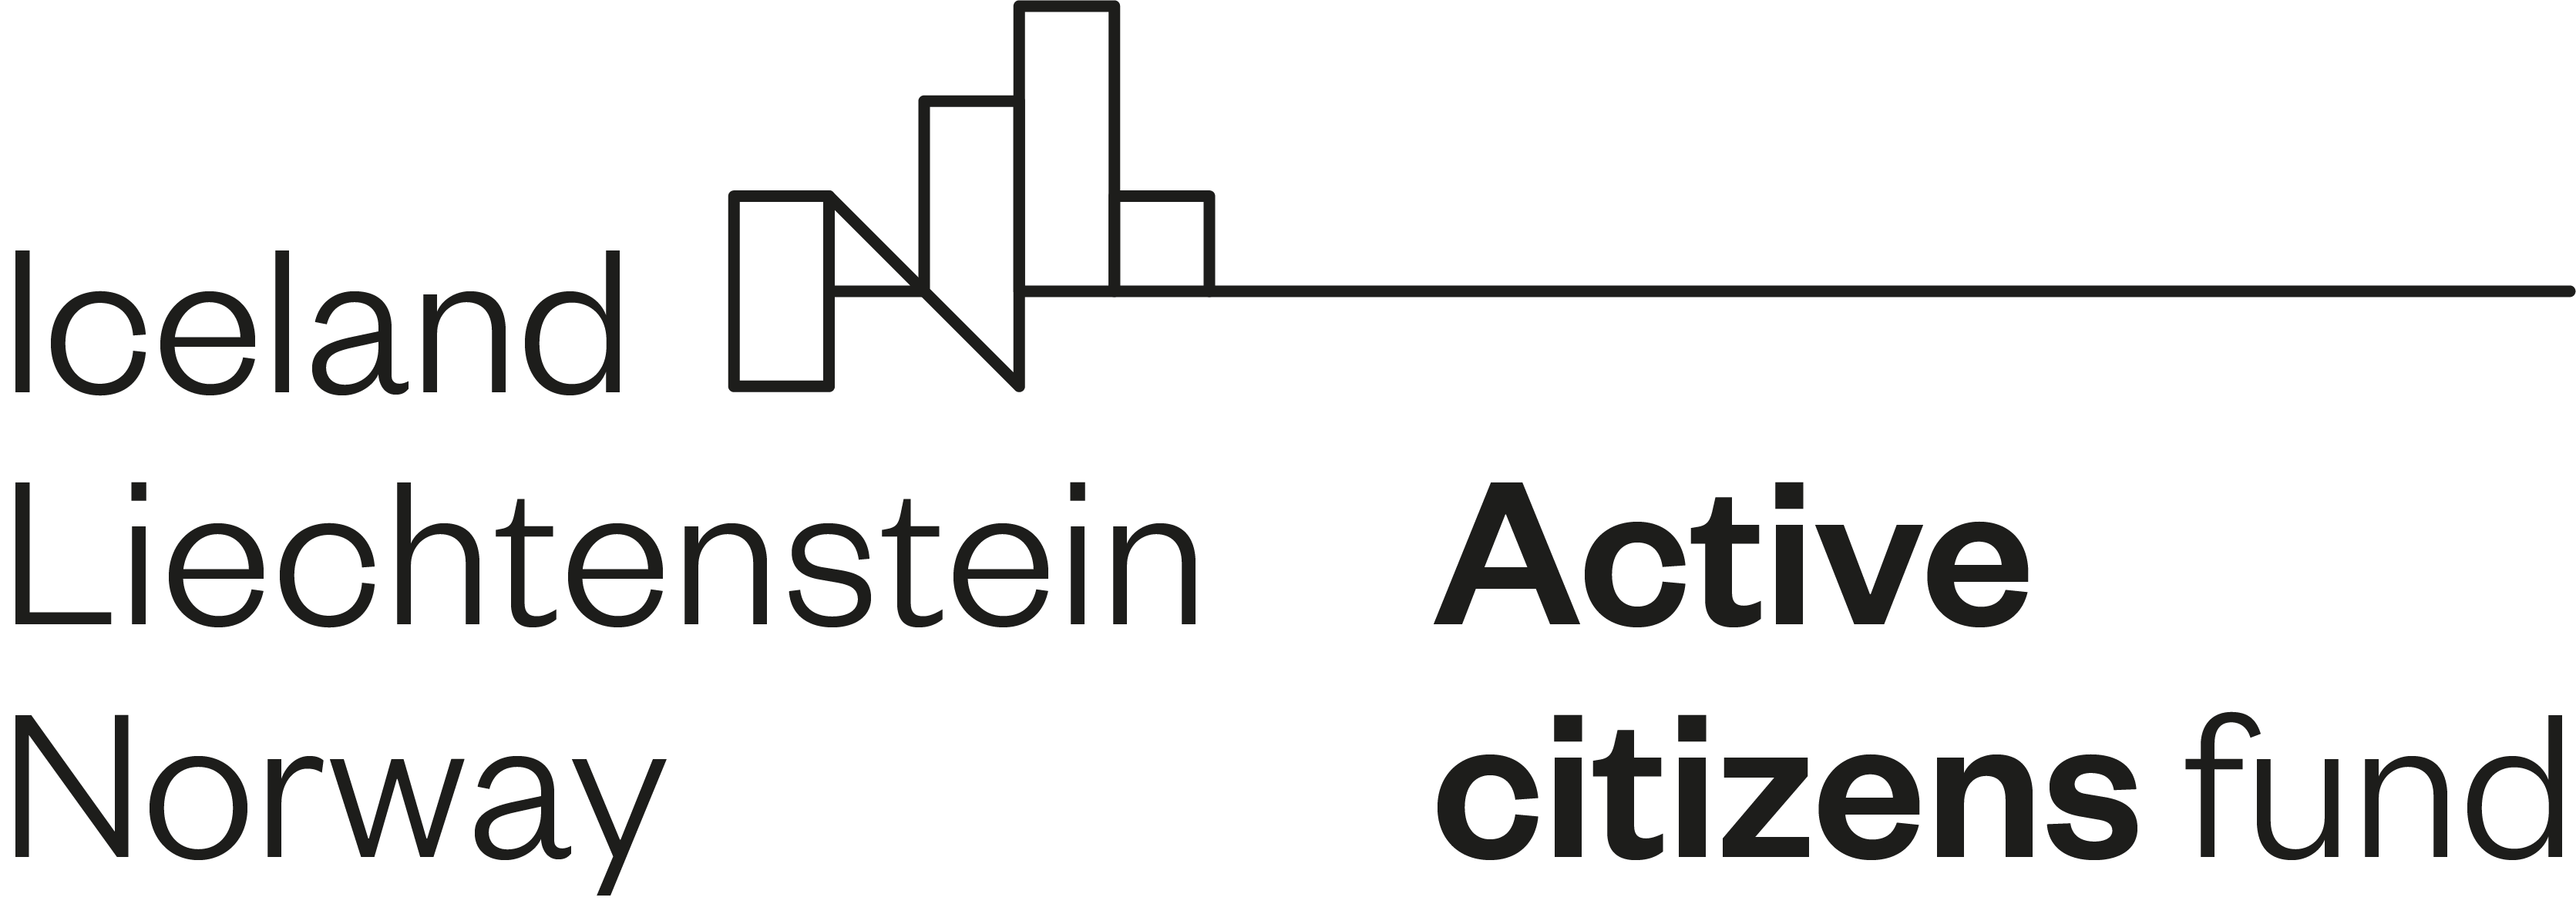 Active sitizens fund logo